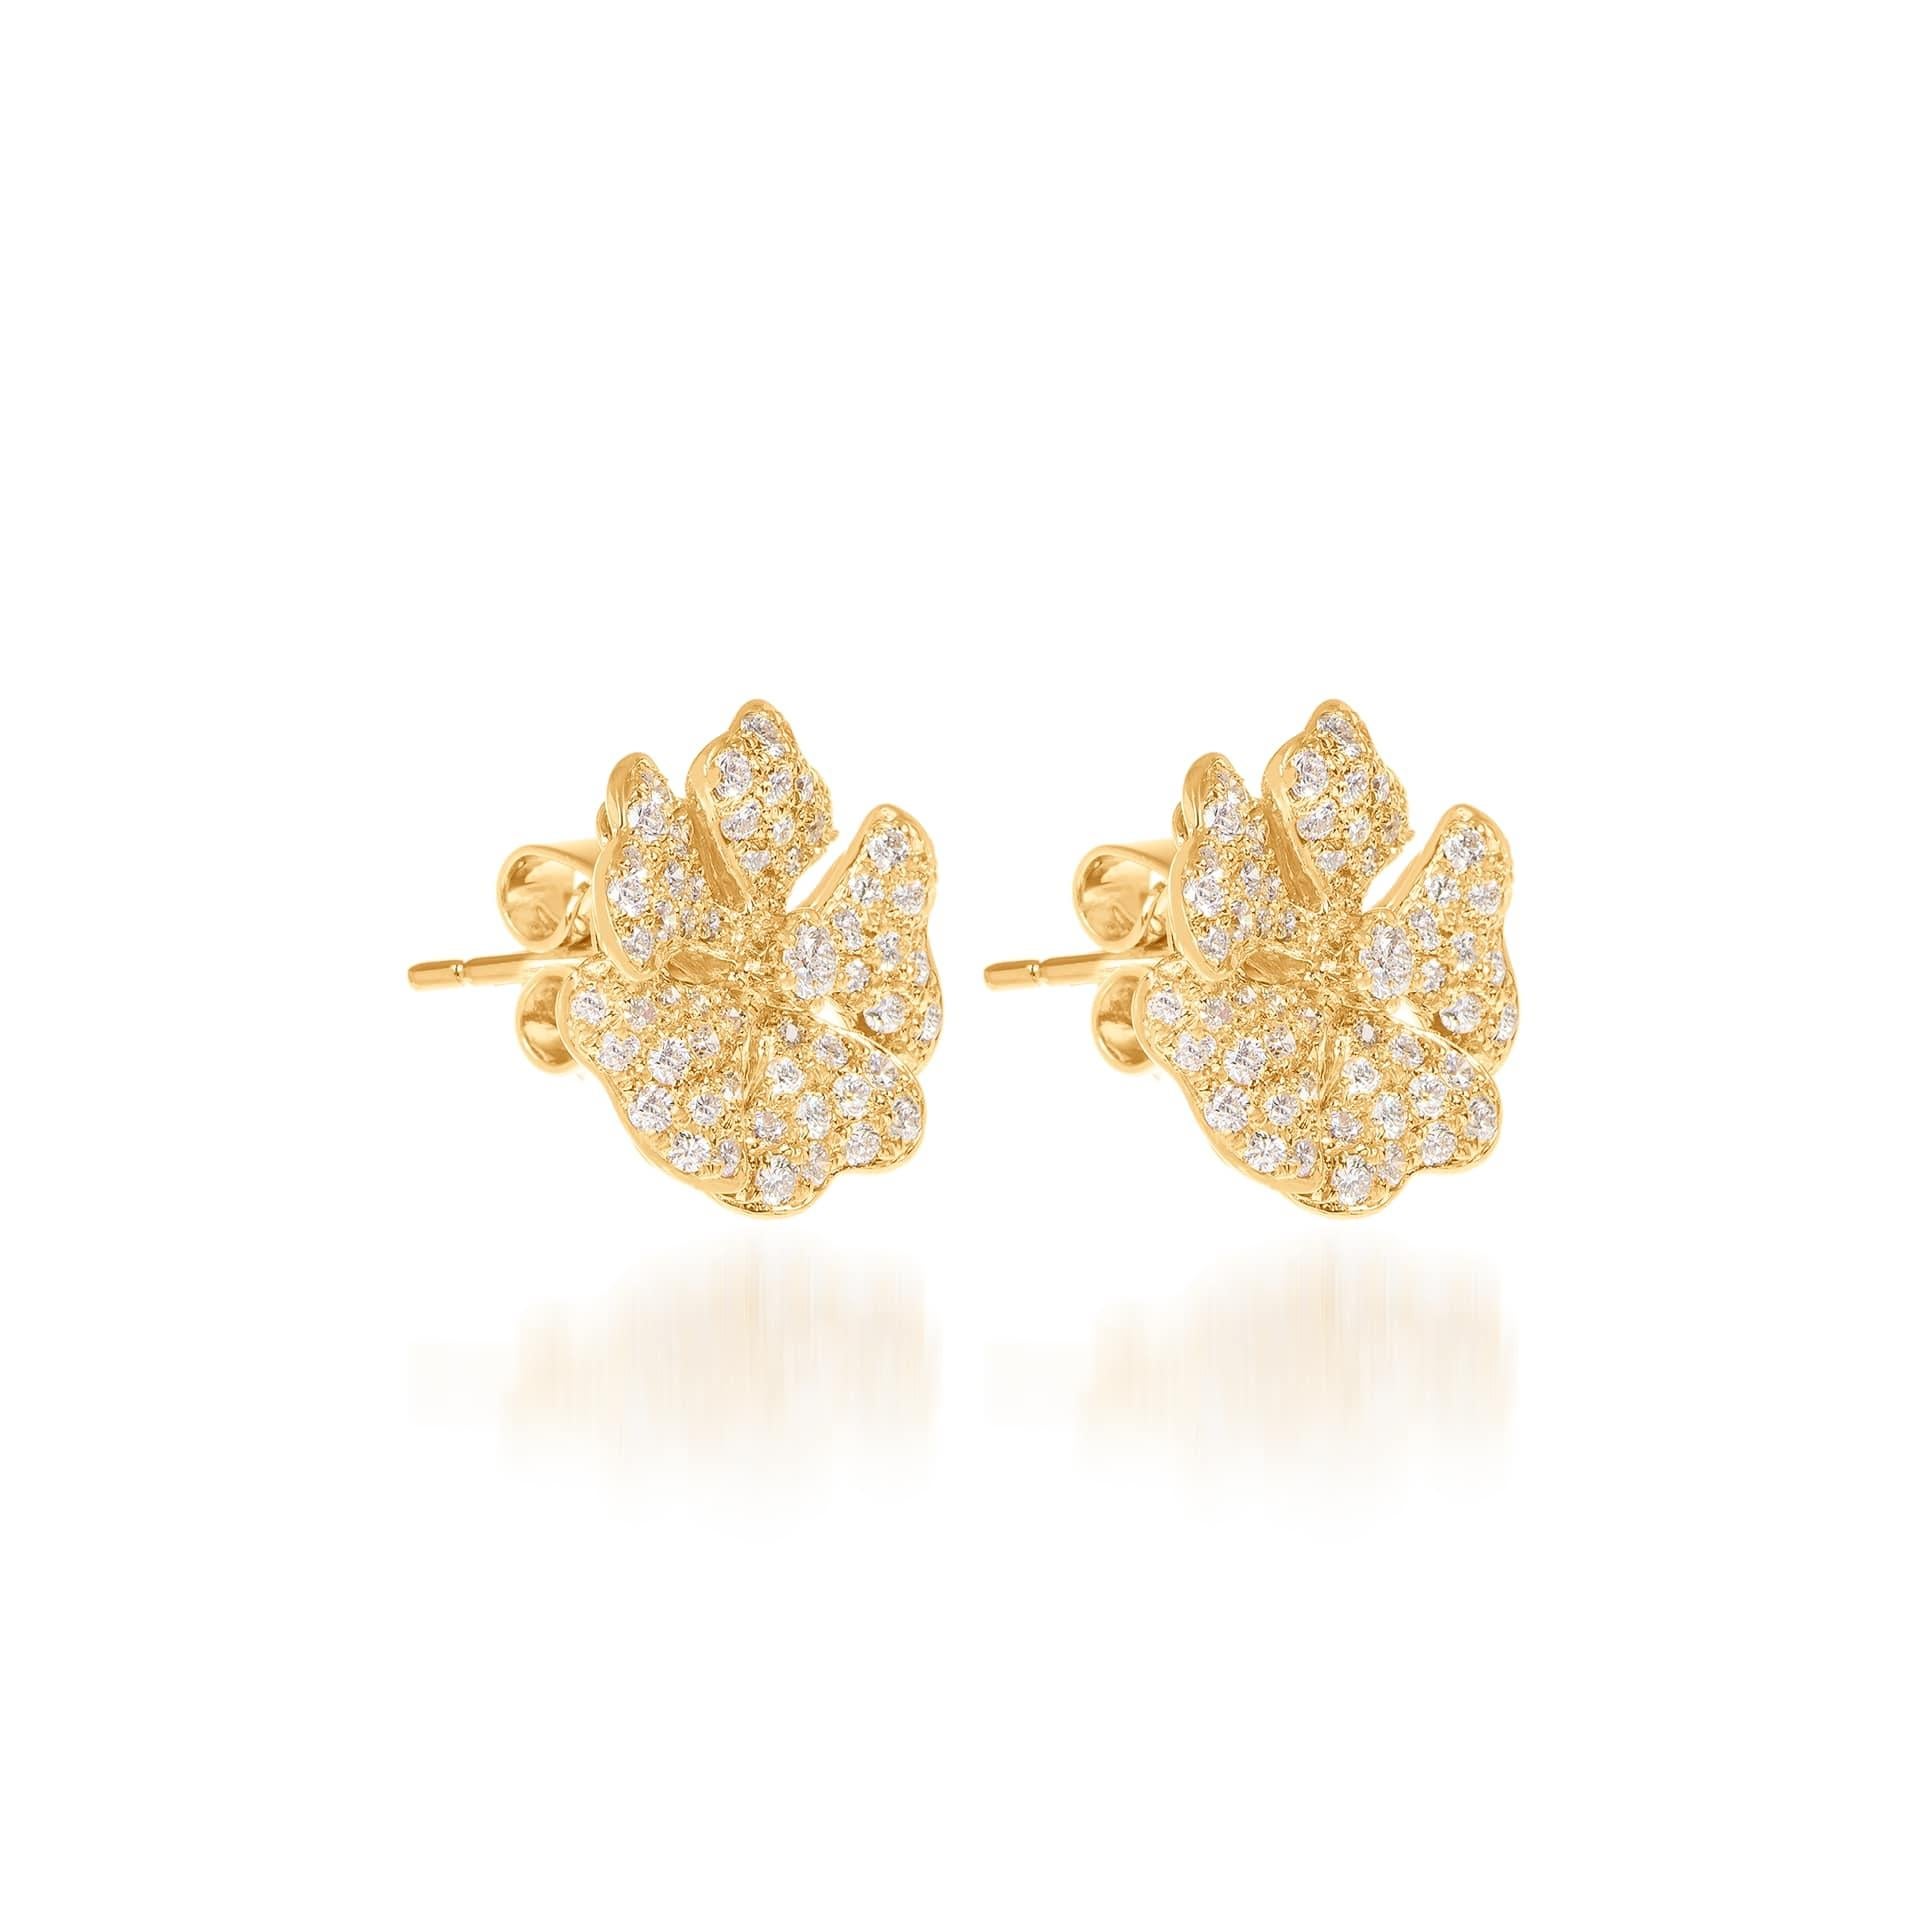 Boucles d'oreilles Bloom en or jaune 18 carats avec petits diamants pavés

Inspirée par les pétales exquis de la fleur alpine de quintefeuille, la collection Bloom associe la richesse des diamants et des métaux précieux à la légèreté et à la